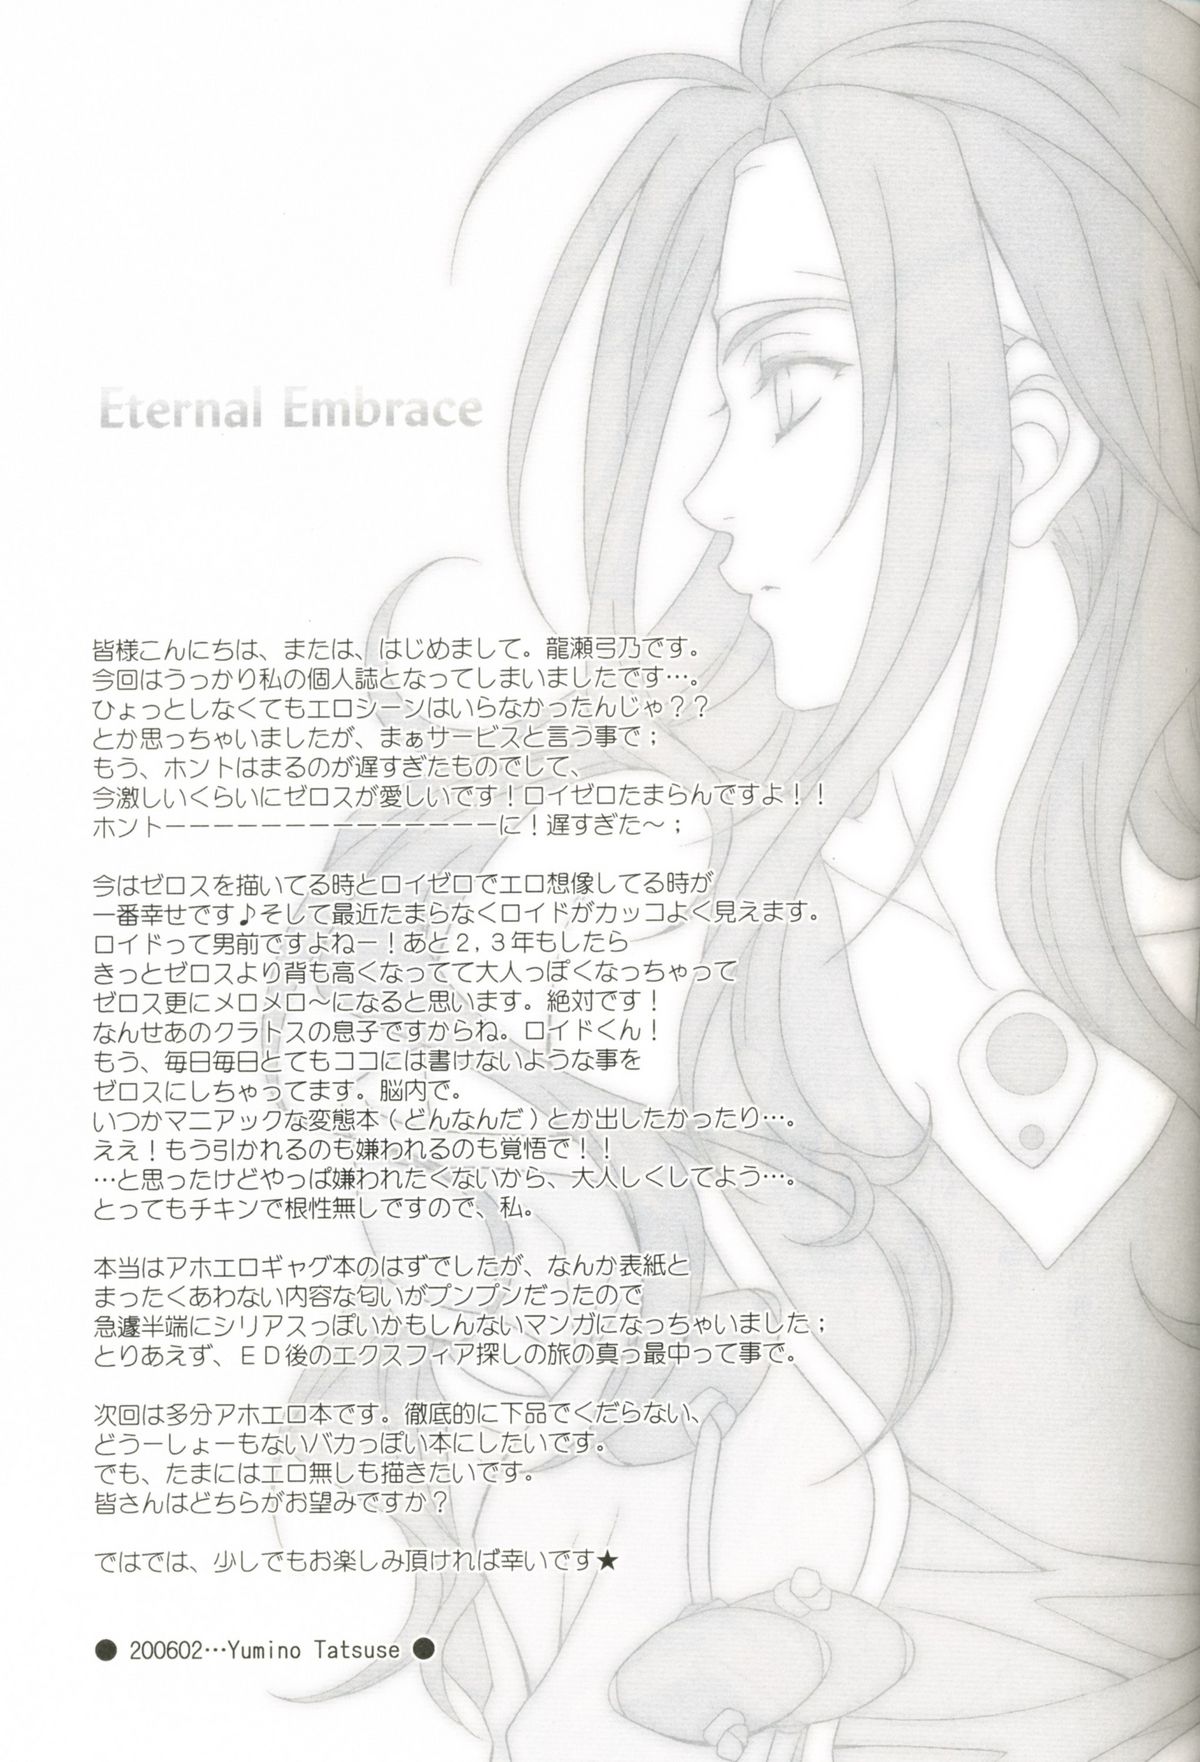 [PINK POWER (龍瀬弓乃)] Eternal Embrace (テイルズ オブ シンフォニア)